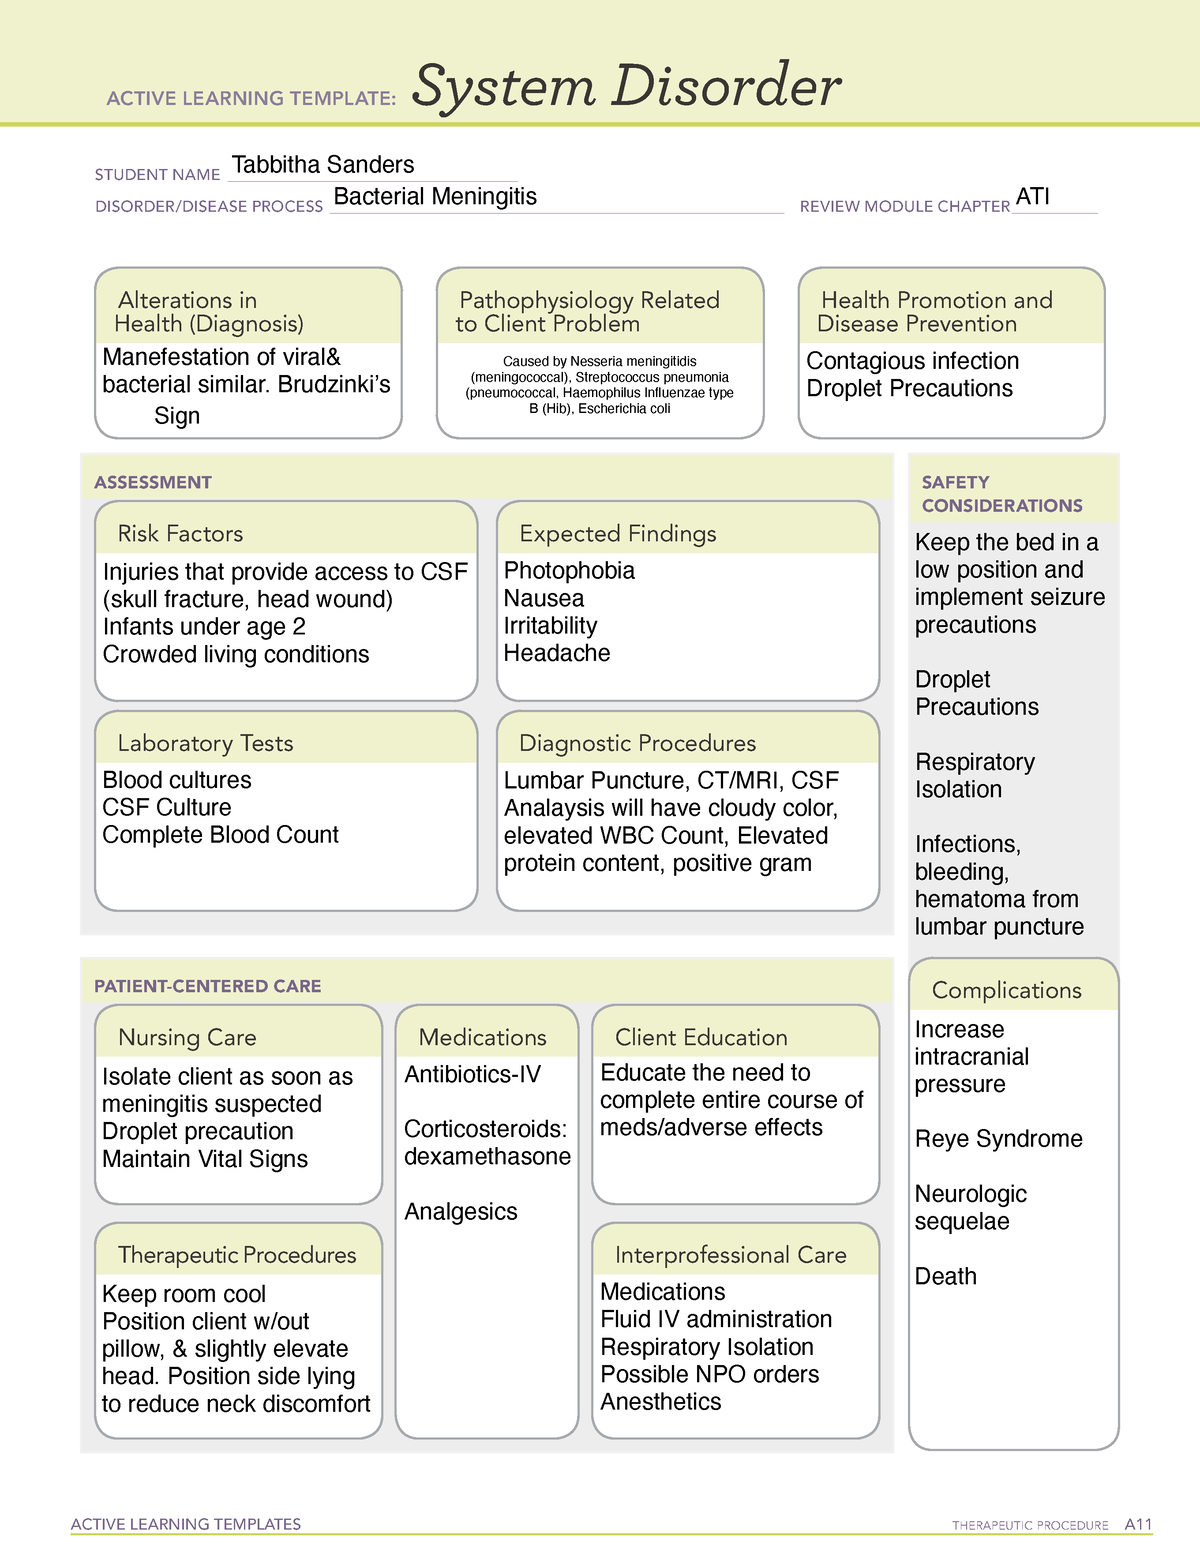 ati-focused-review-meningitis-active-learning-templates-therapeutic